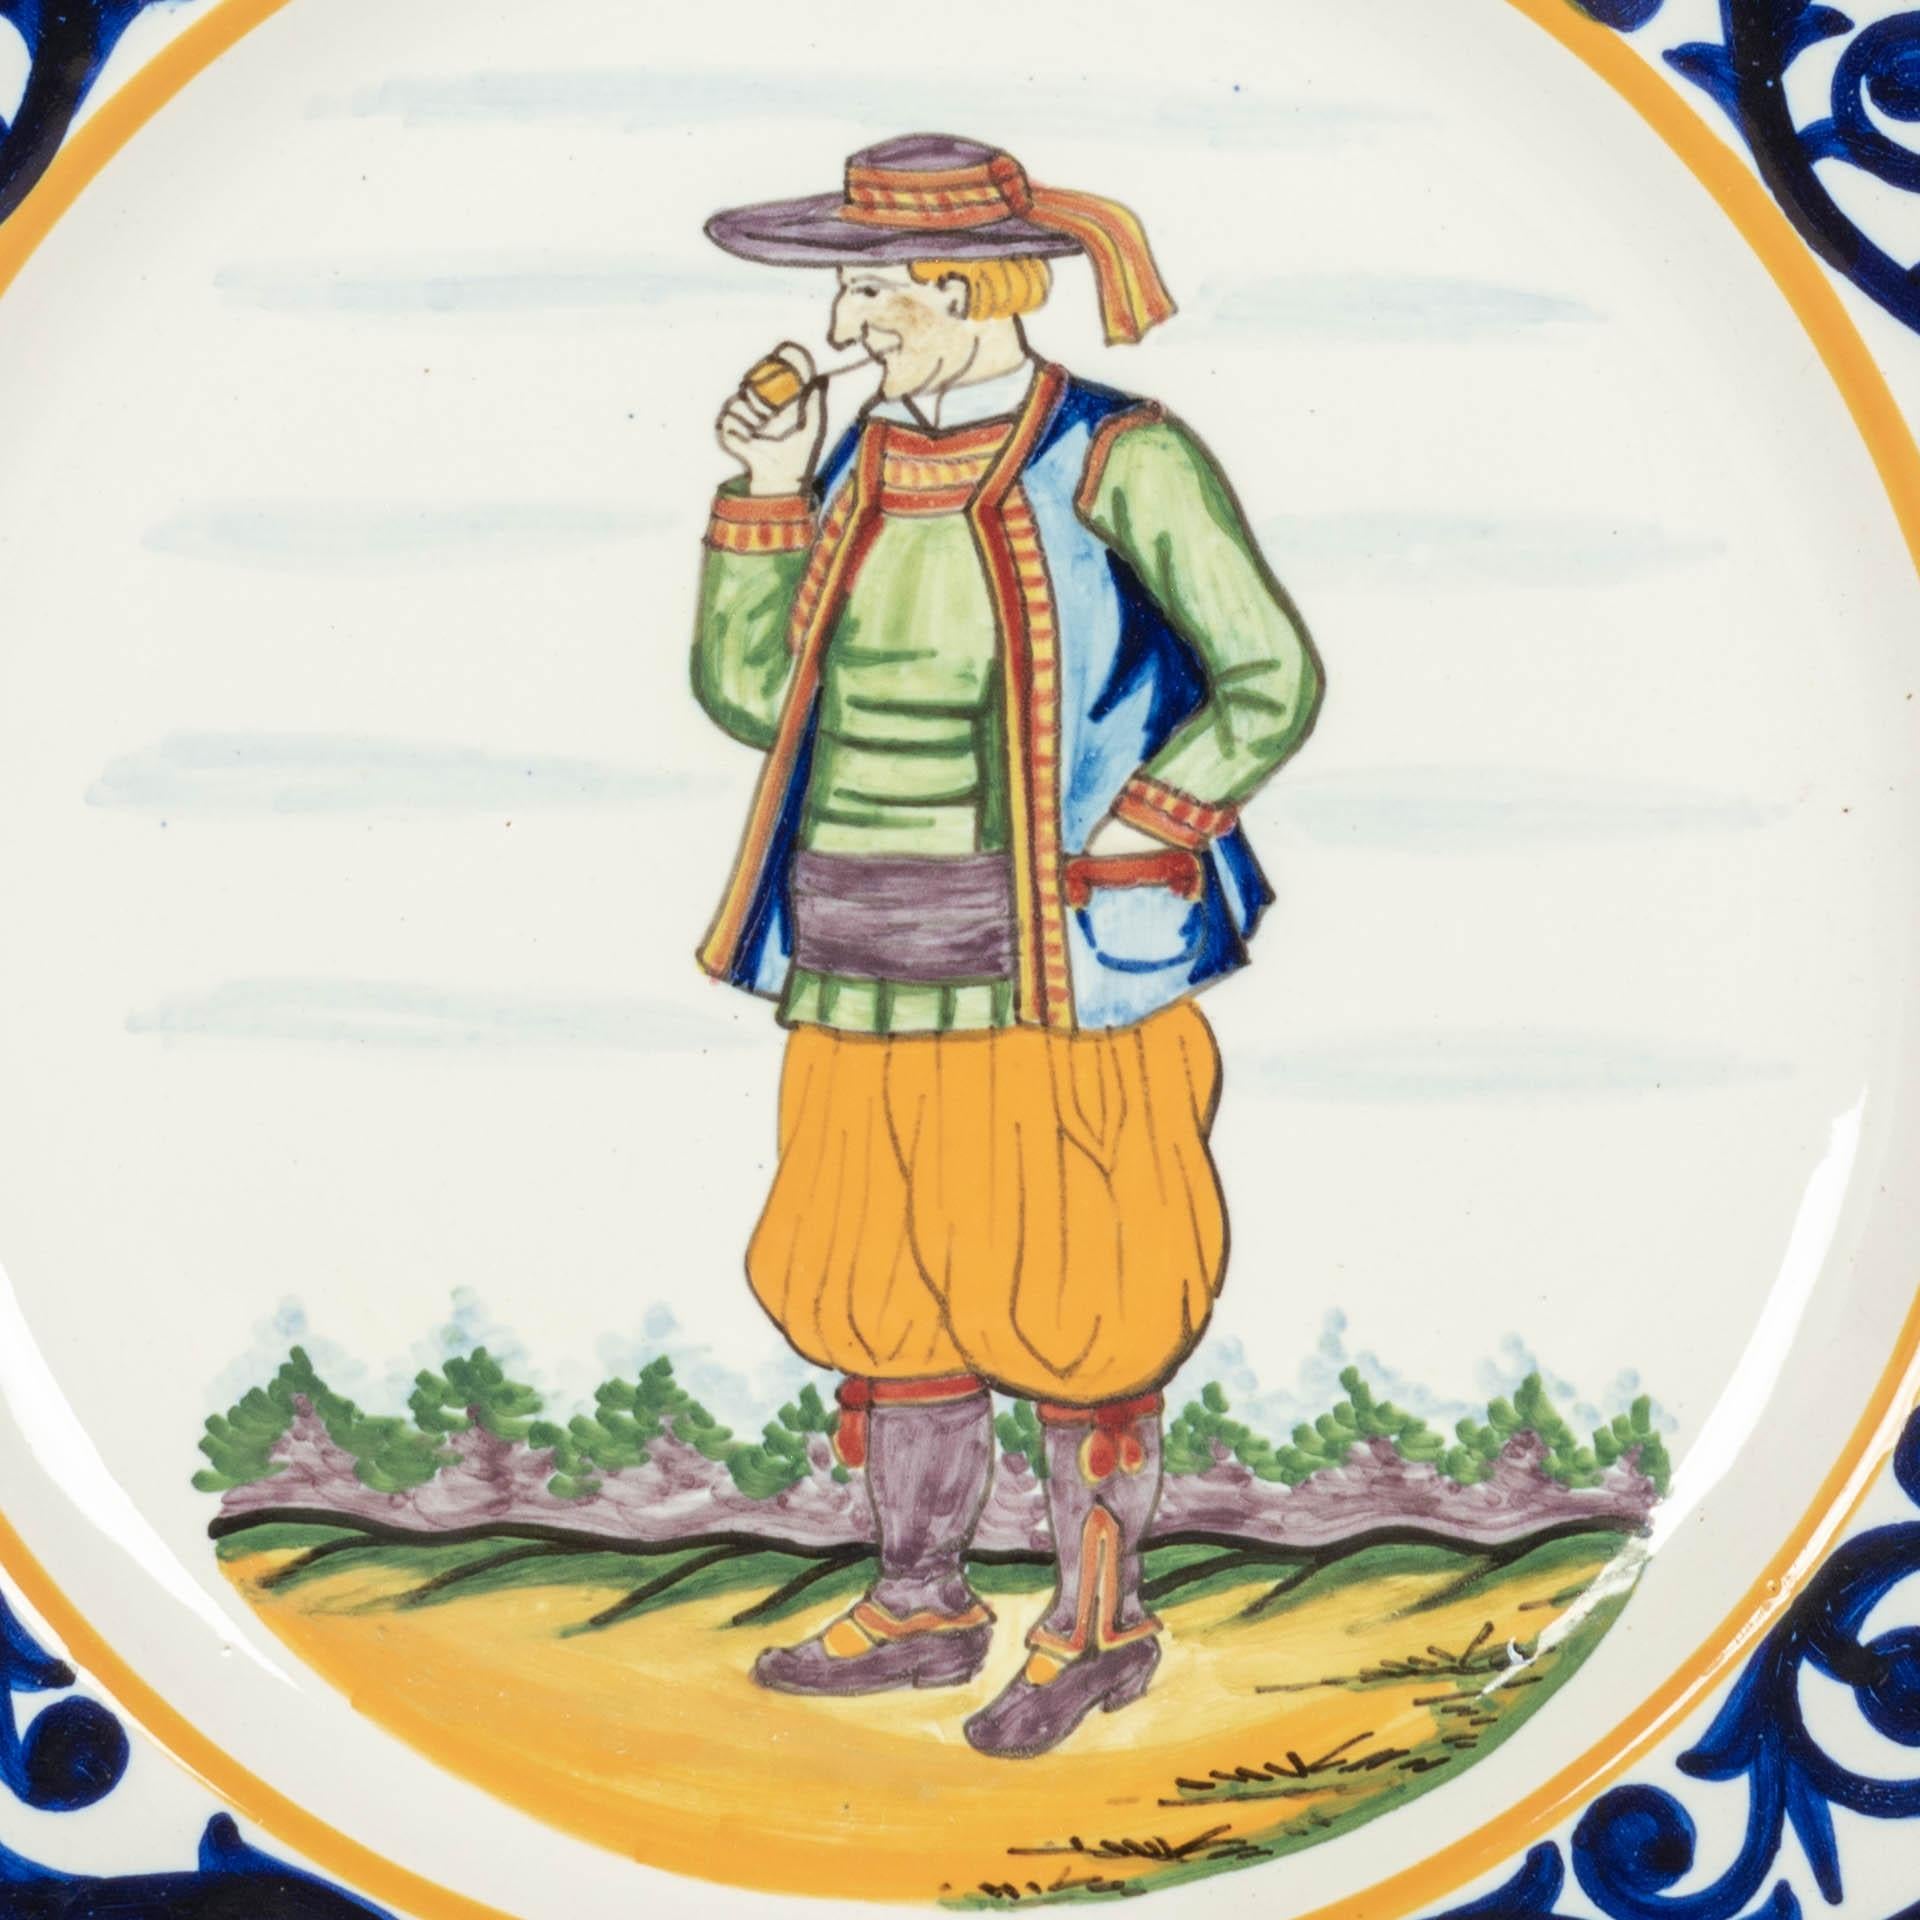 Handbemalter dekorativer Teller aus französischer Fayence von Henriot Quimper, auf dem ein Bretone mit Pfeife in traditioneller Kleidung abgebildet ist. Blaue Blattwerkumrandung und oben mit Wappen der Quimper-Schafe. Eine gute Qualität, dicke